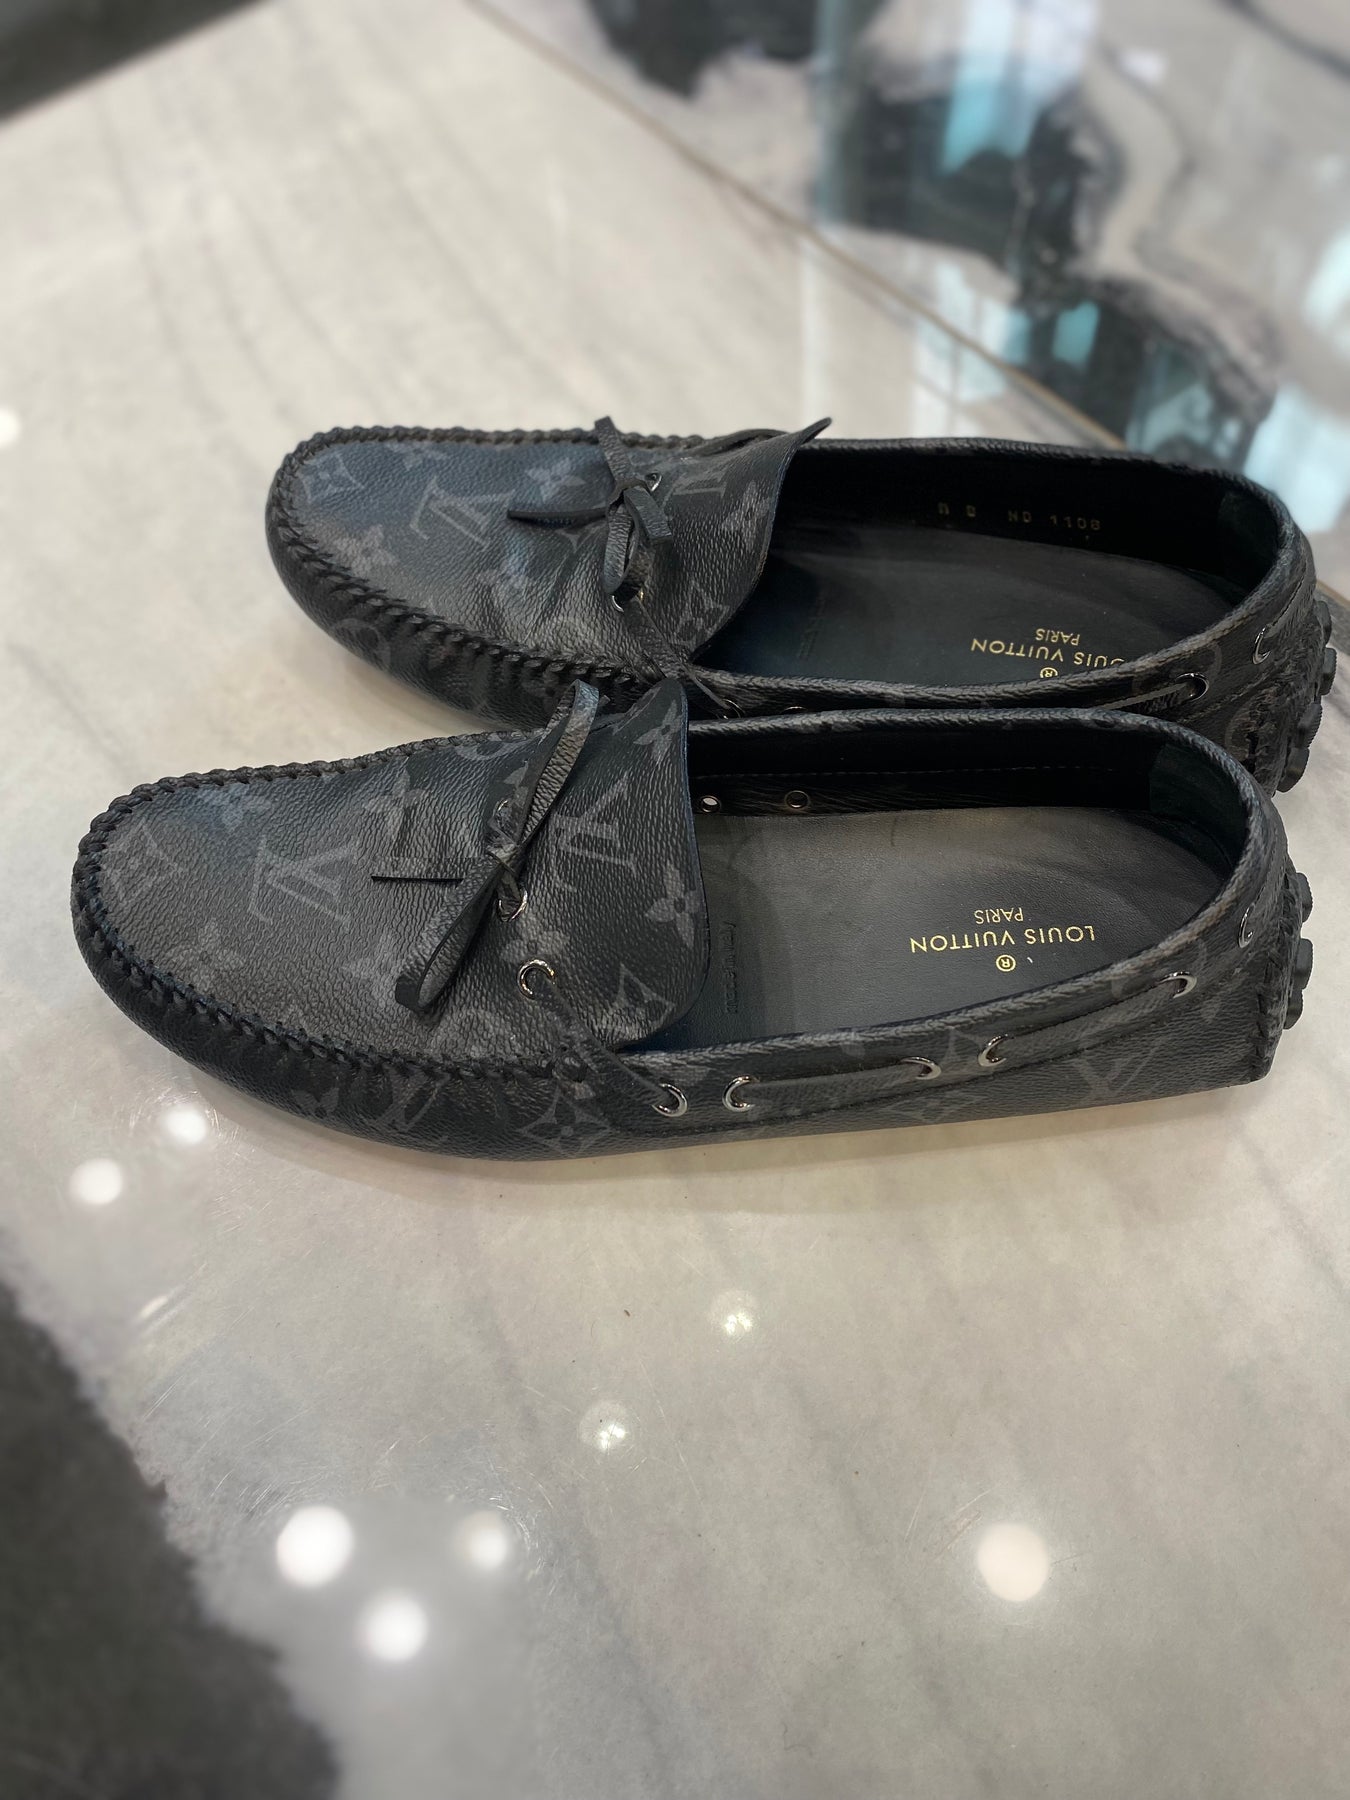 Louis Vuitton, Shoes, Louis Vuitton Arizona Moccasin